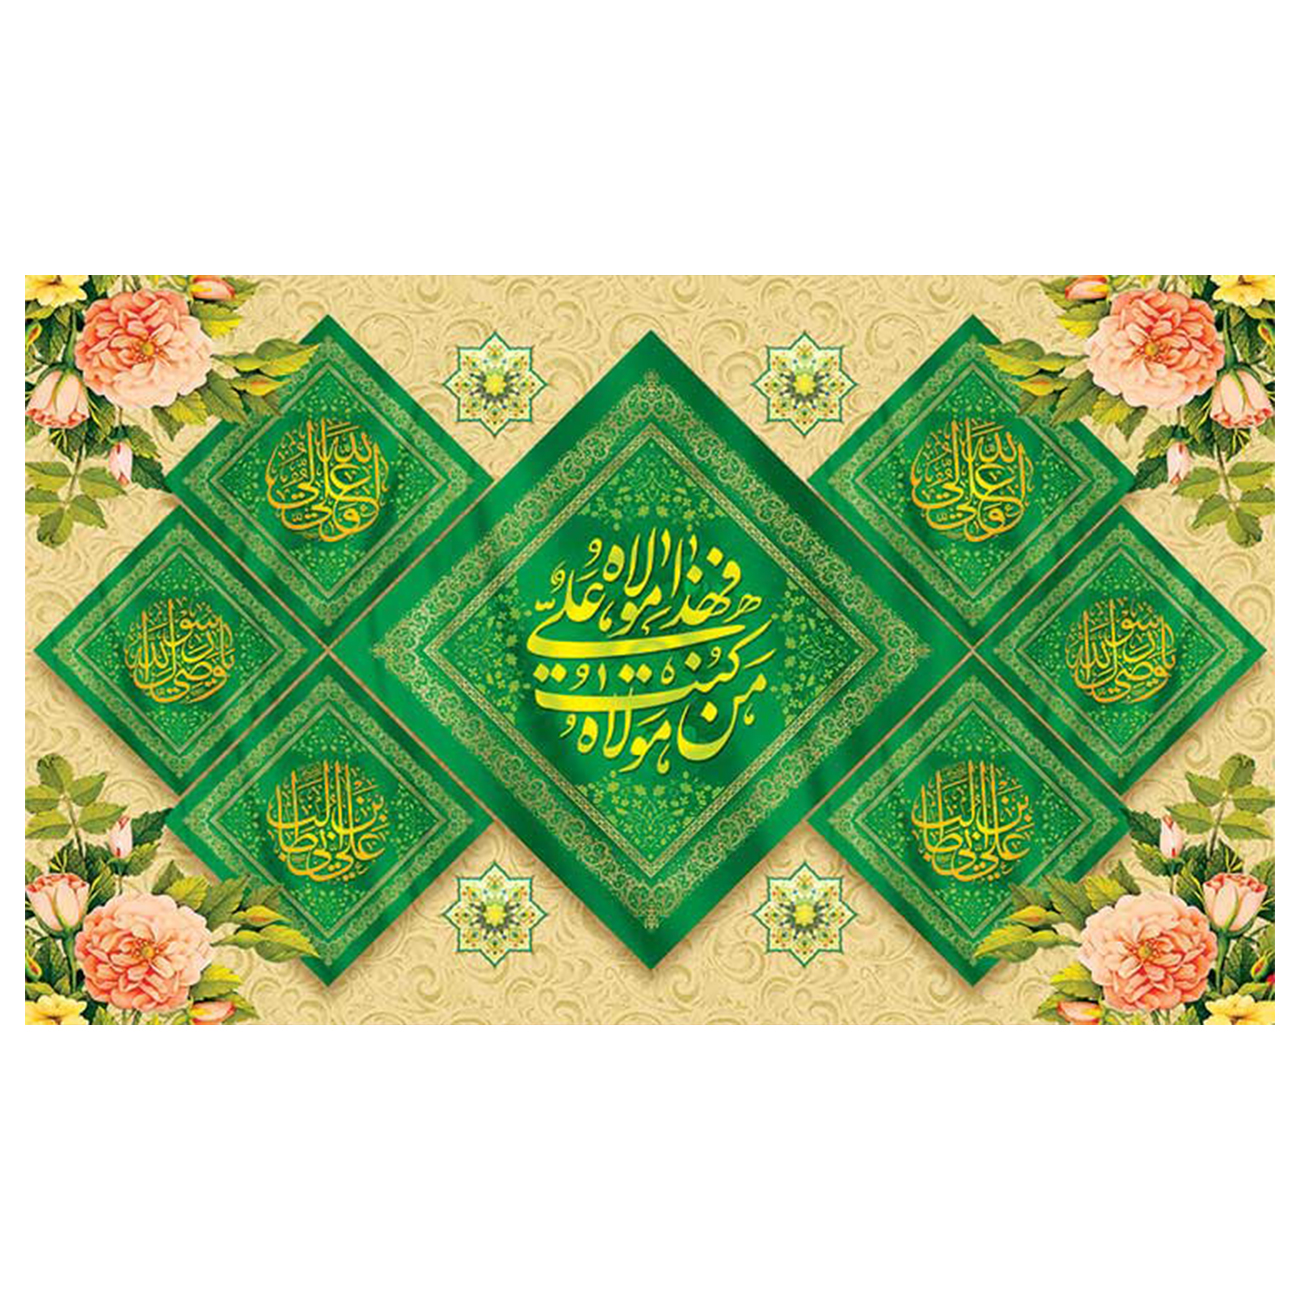  پرچم طرح مذهبی برای عید غدیر مدل من کنت مولاه فهذا علی مولاه کد 2076D